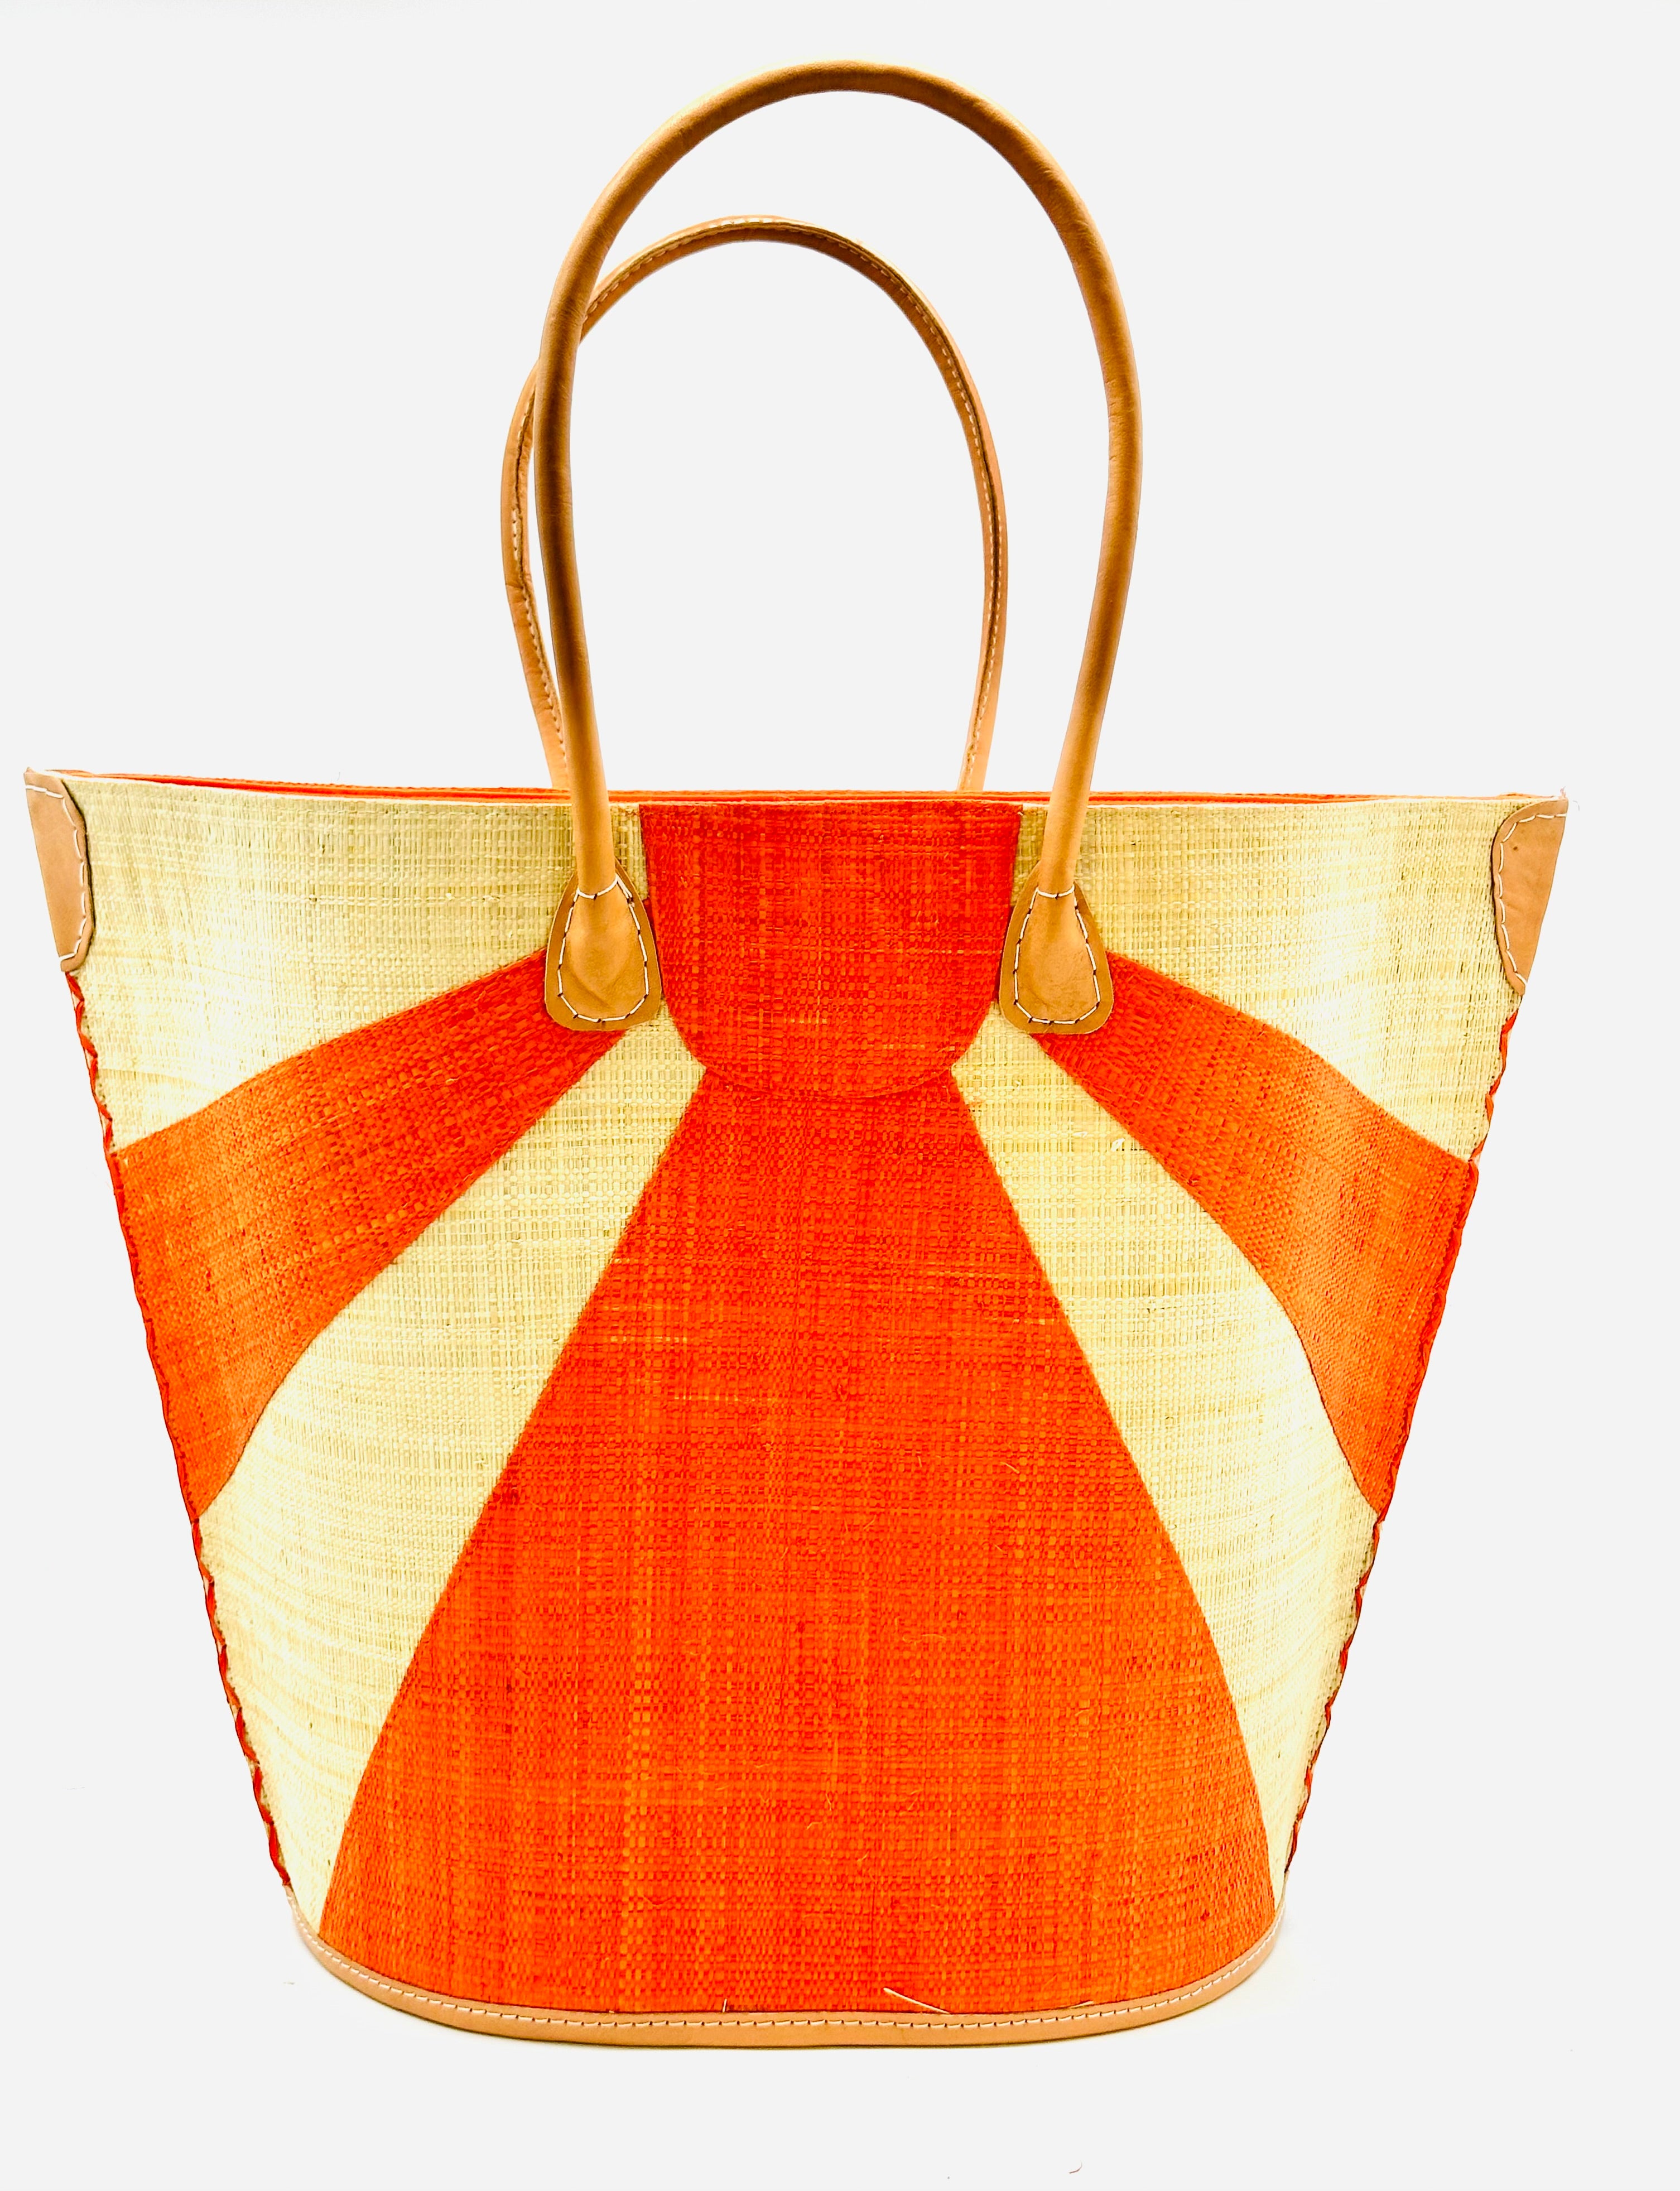 Sunburst Large Straw Tote Bag - Saffron – Bagging Rights